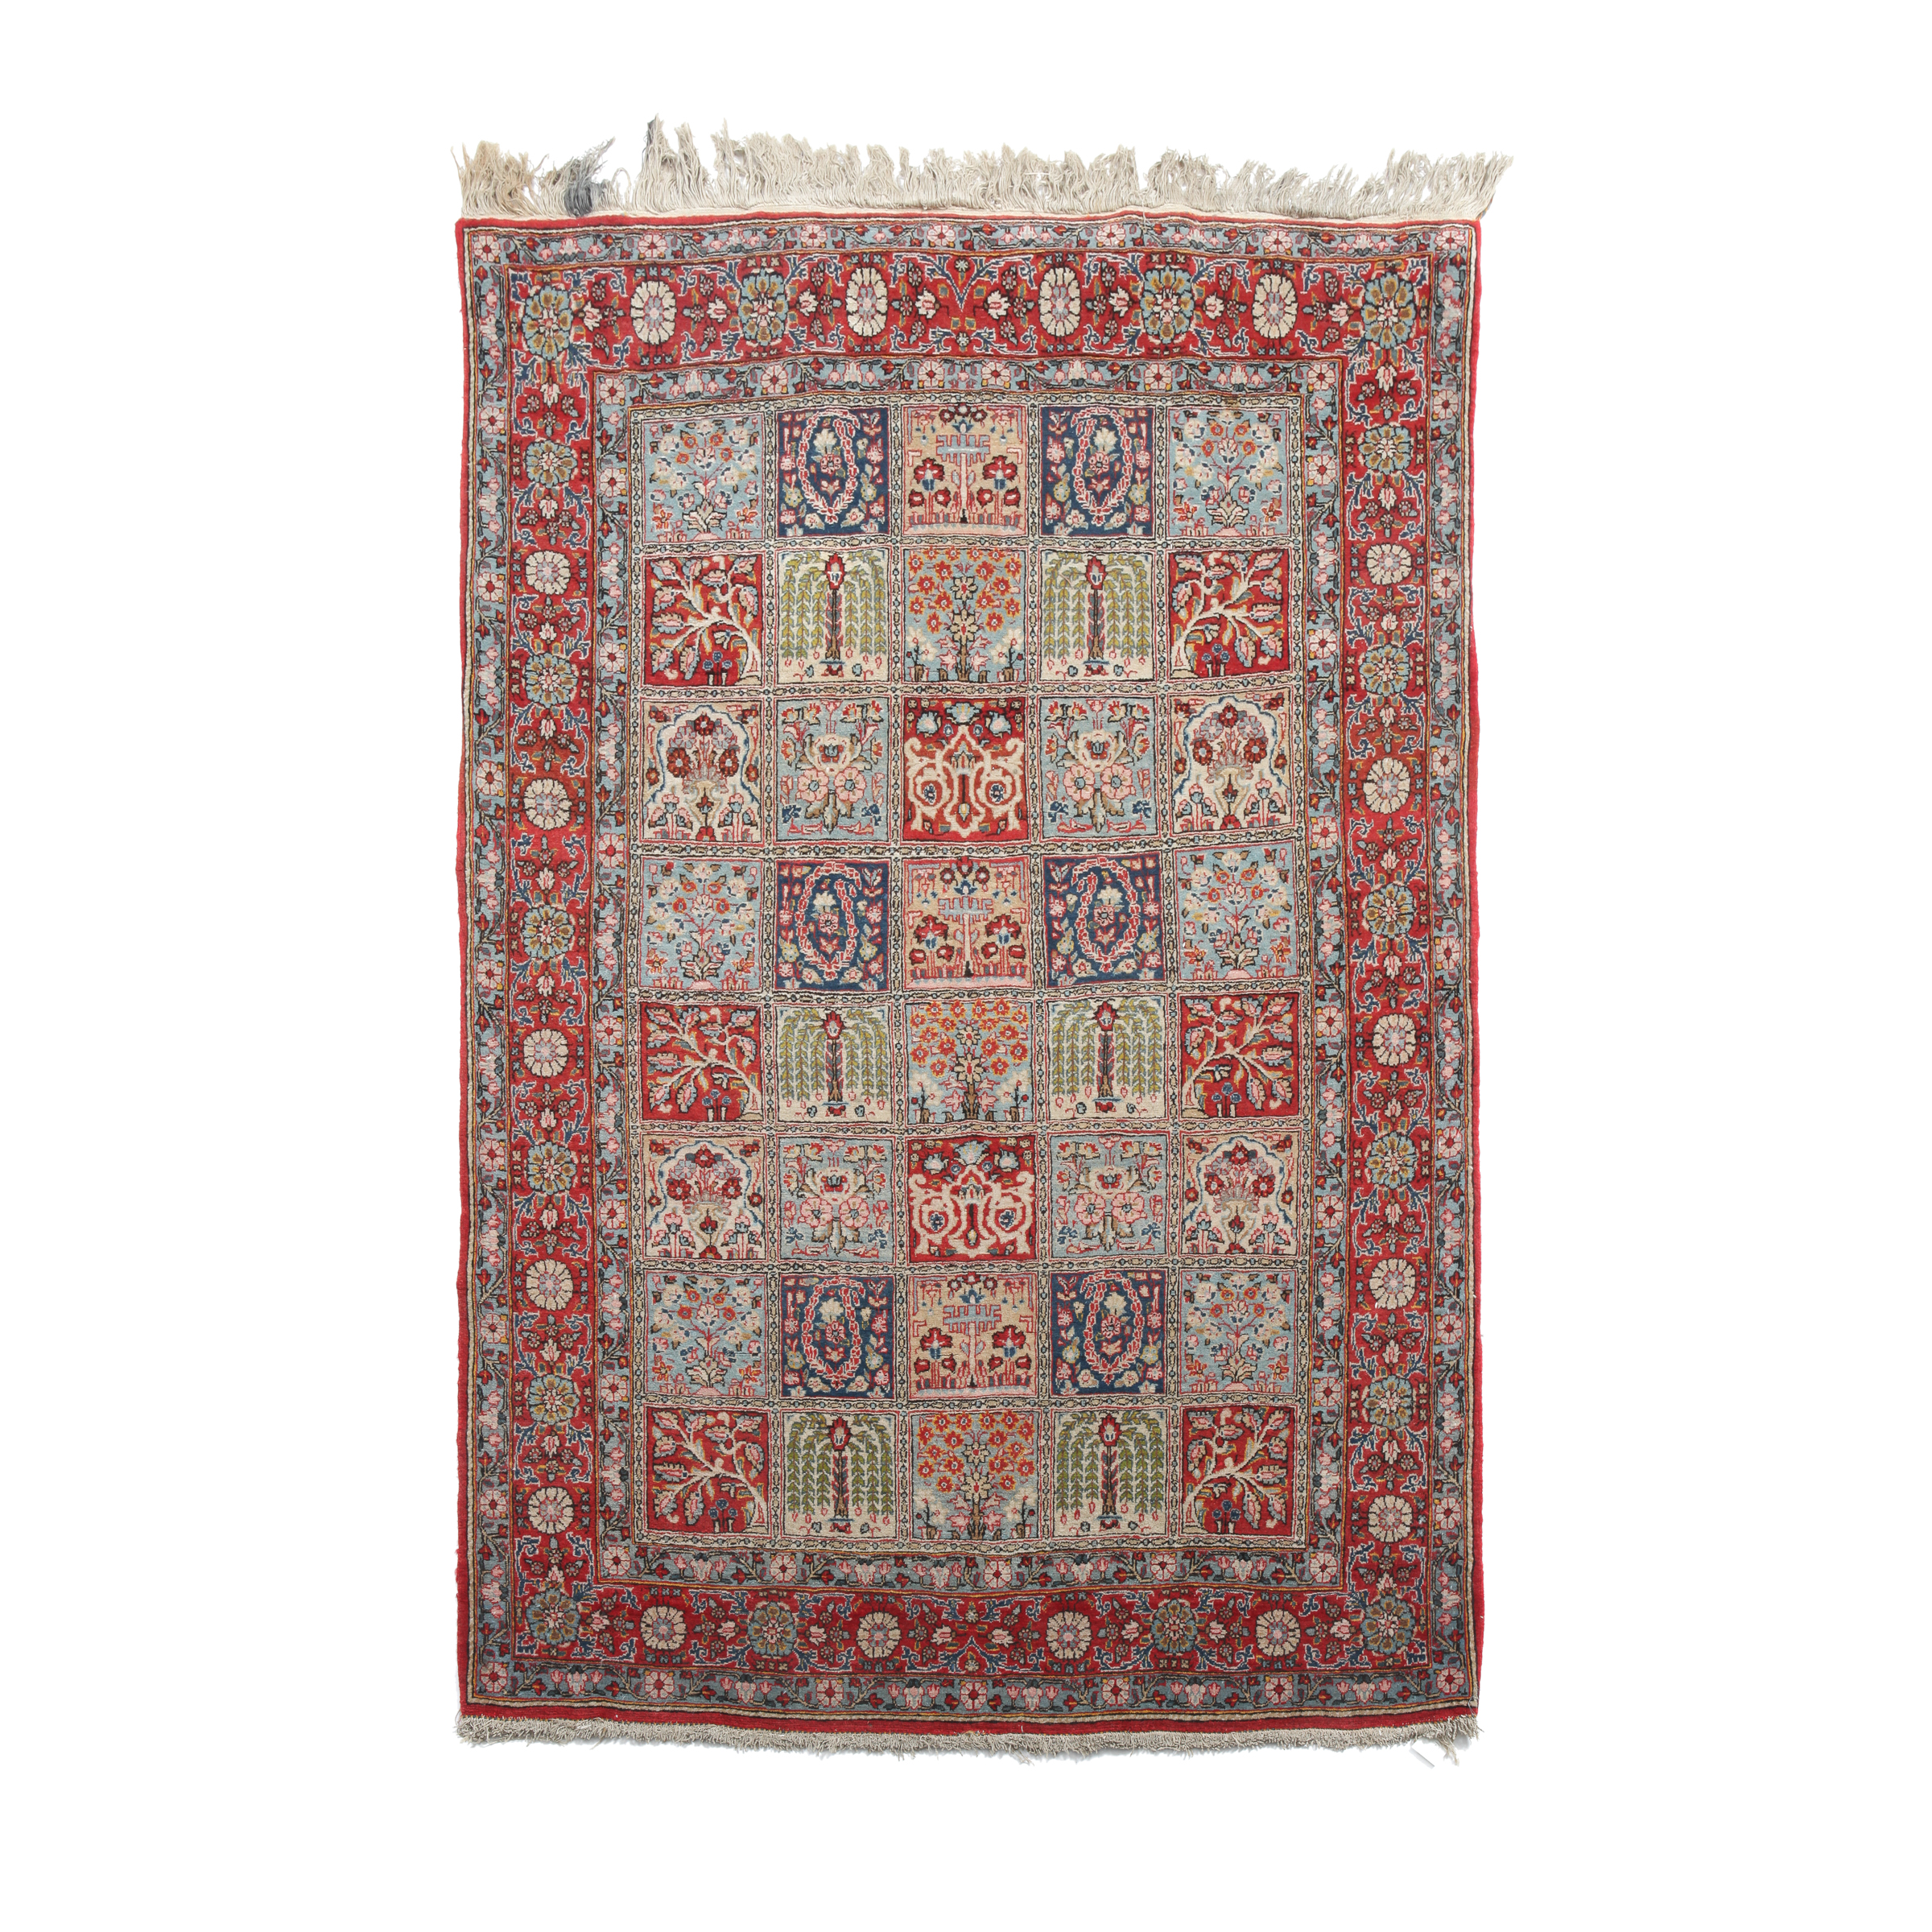 Qum Tile Design Rug, Persian, mid 20th century